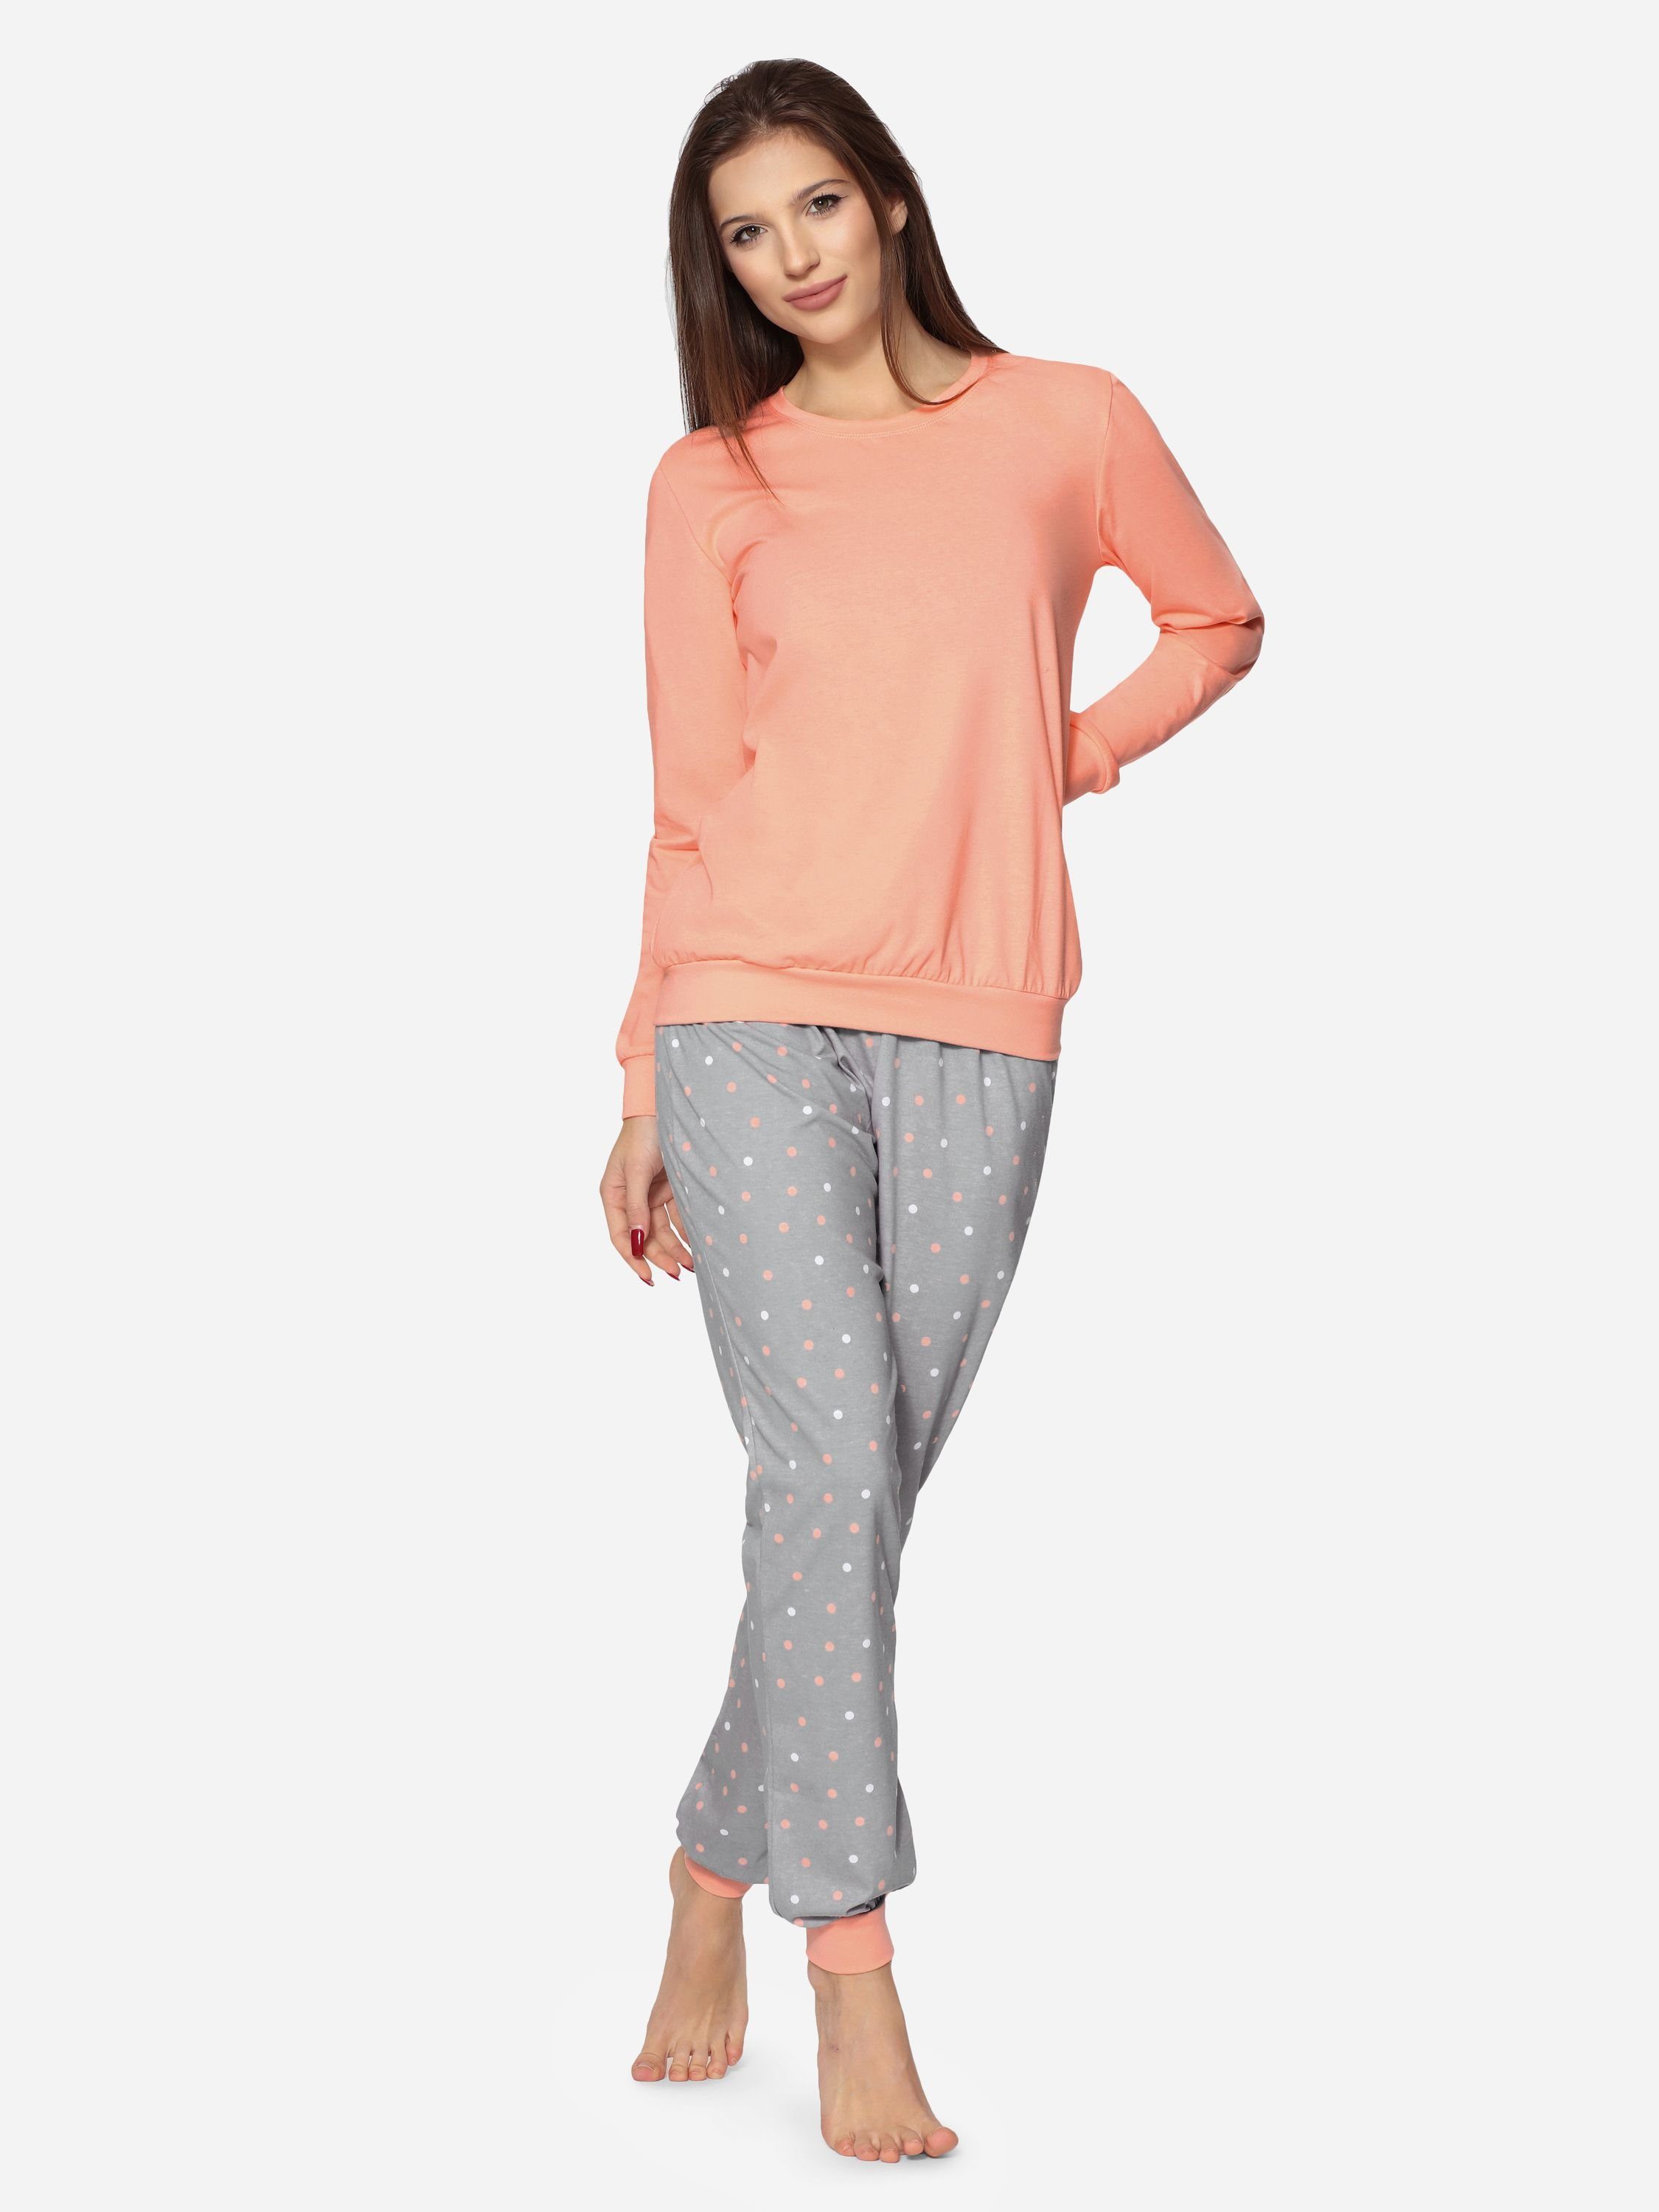 Zweiteiler Merry Damen Schlafanzug bunt Pyjama Muster MS10-268 Lachs/Grau lang Style mit Schlafanzug